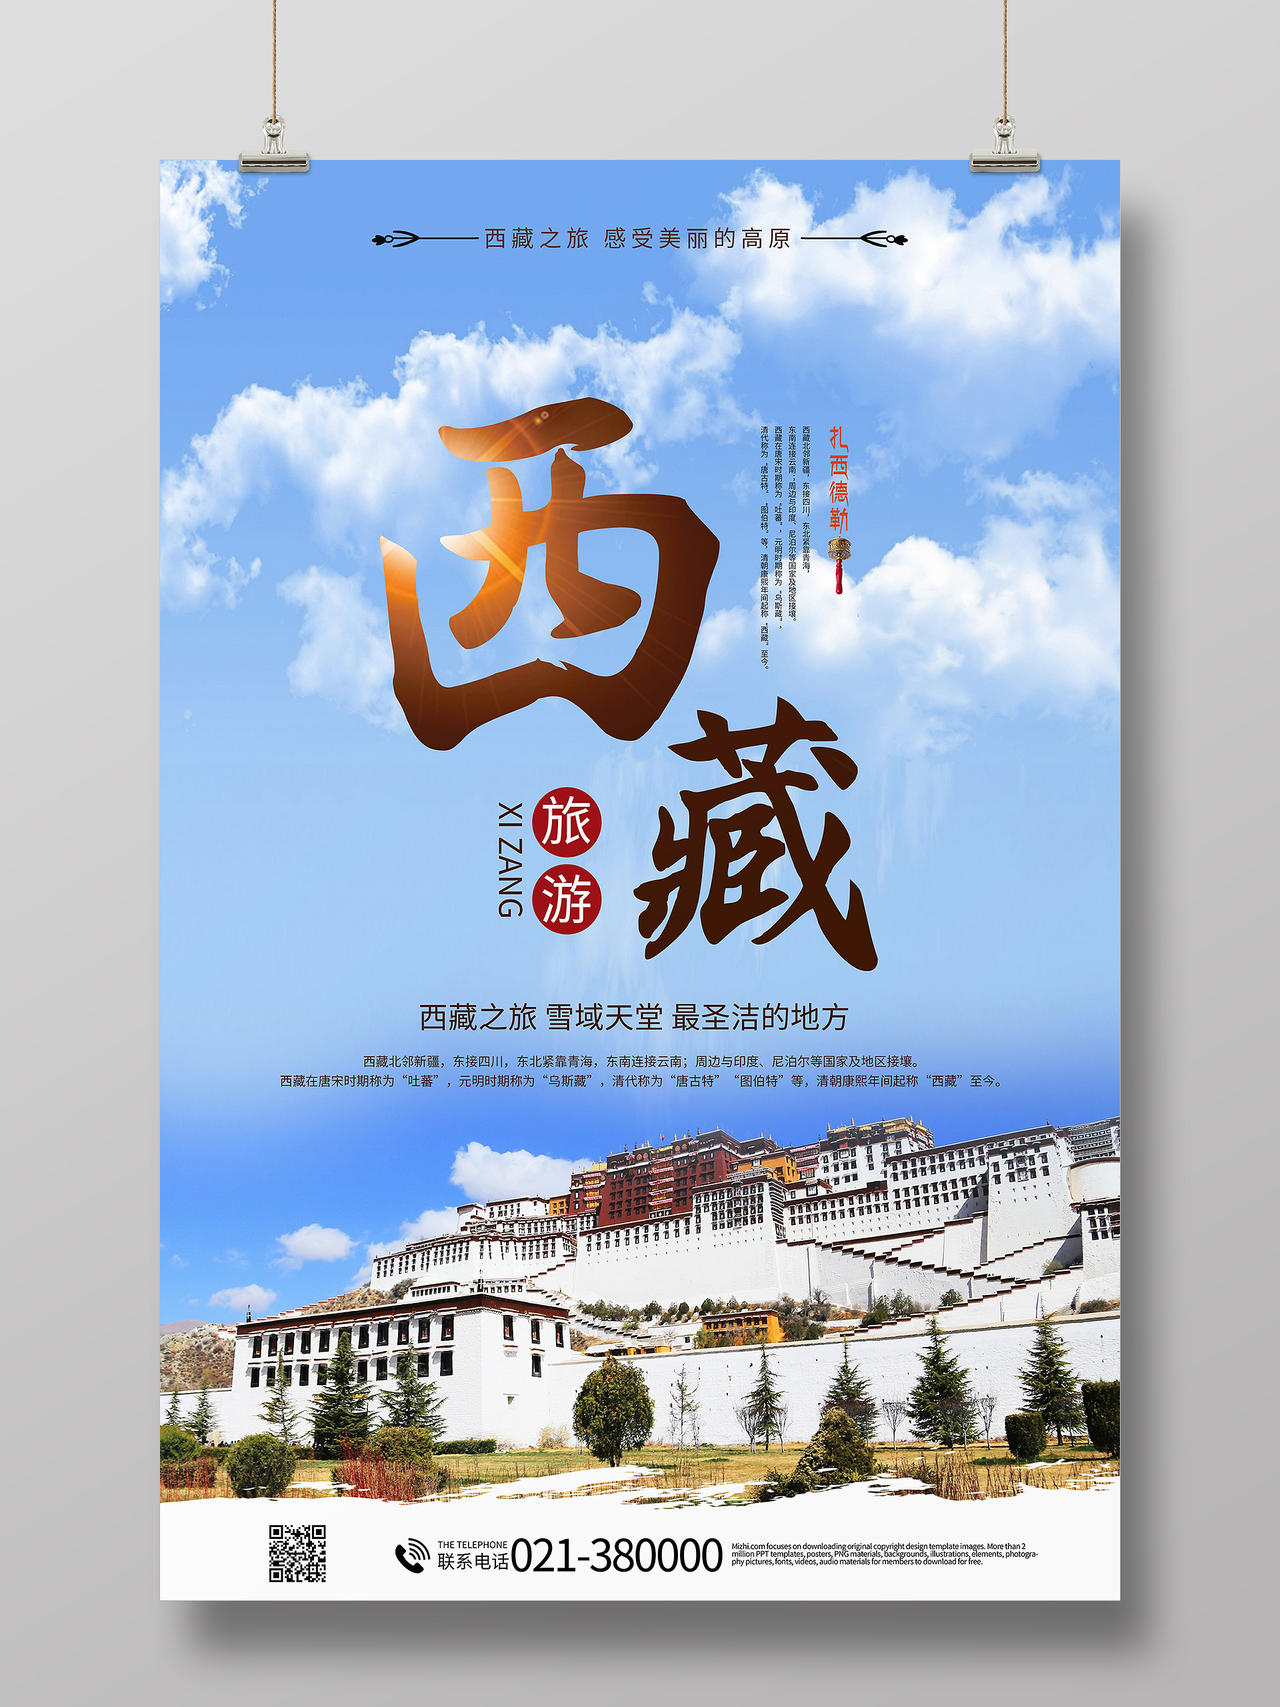 西藏旅游西藏之旅布达拉宫海报